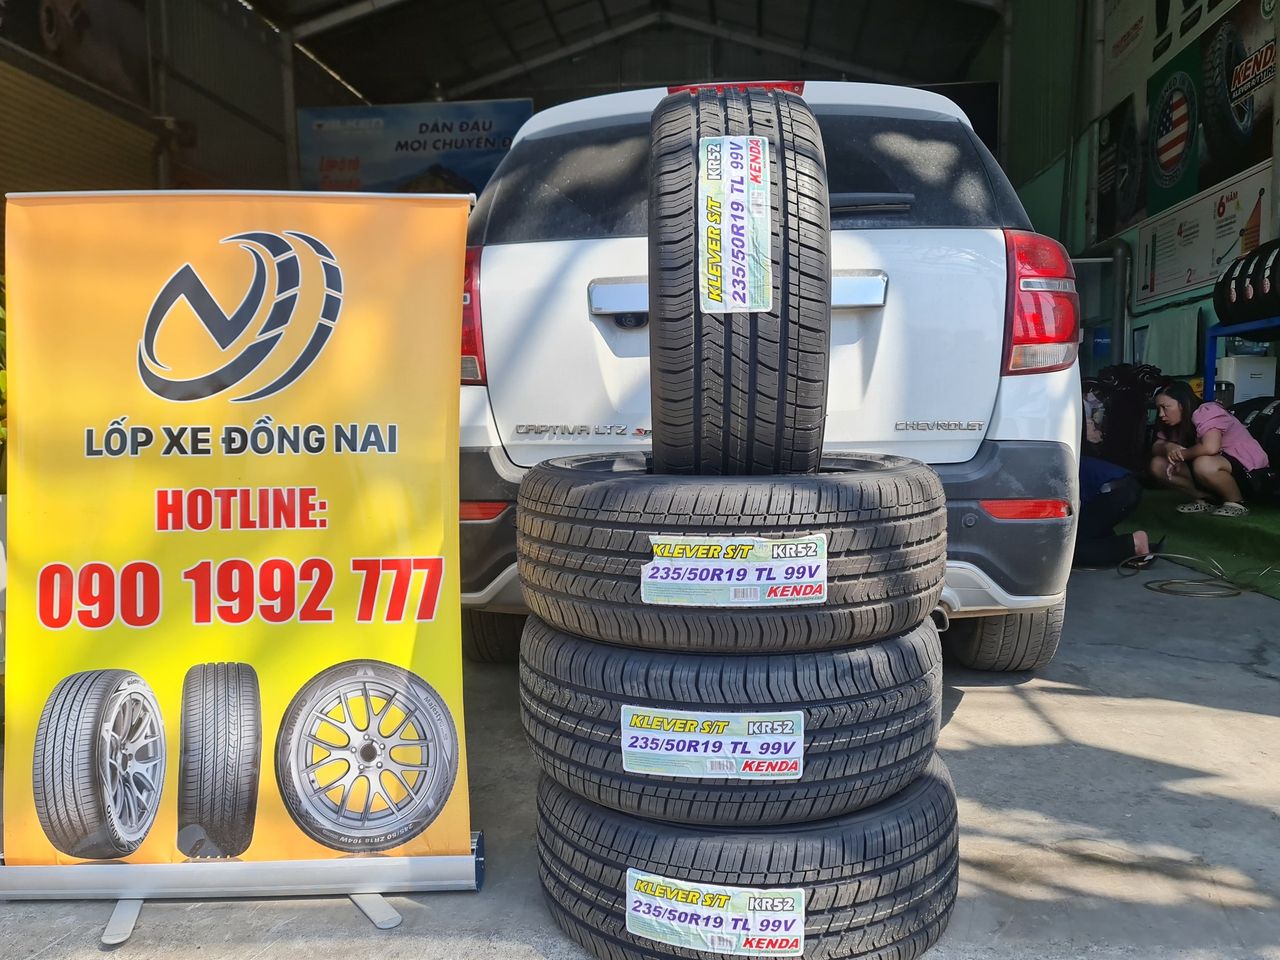 TƯ VẤN : Thay lốp xe Chevrolet Captiva ở Biên Hoà, Đồng Nai.